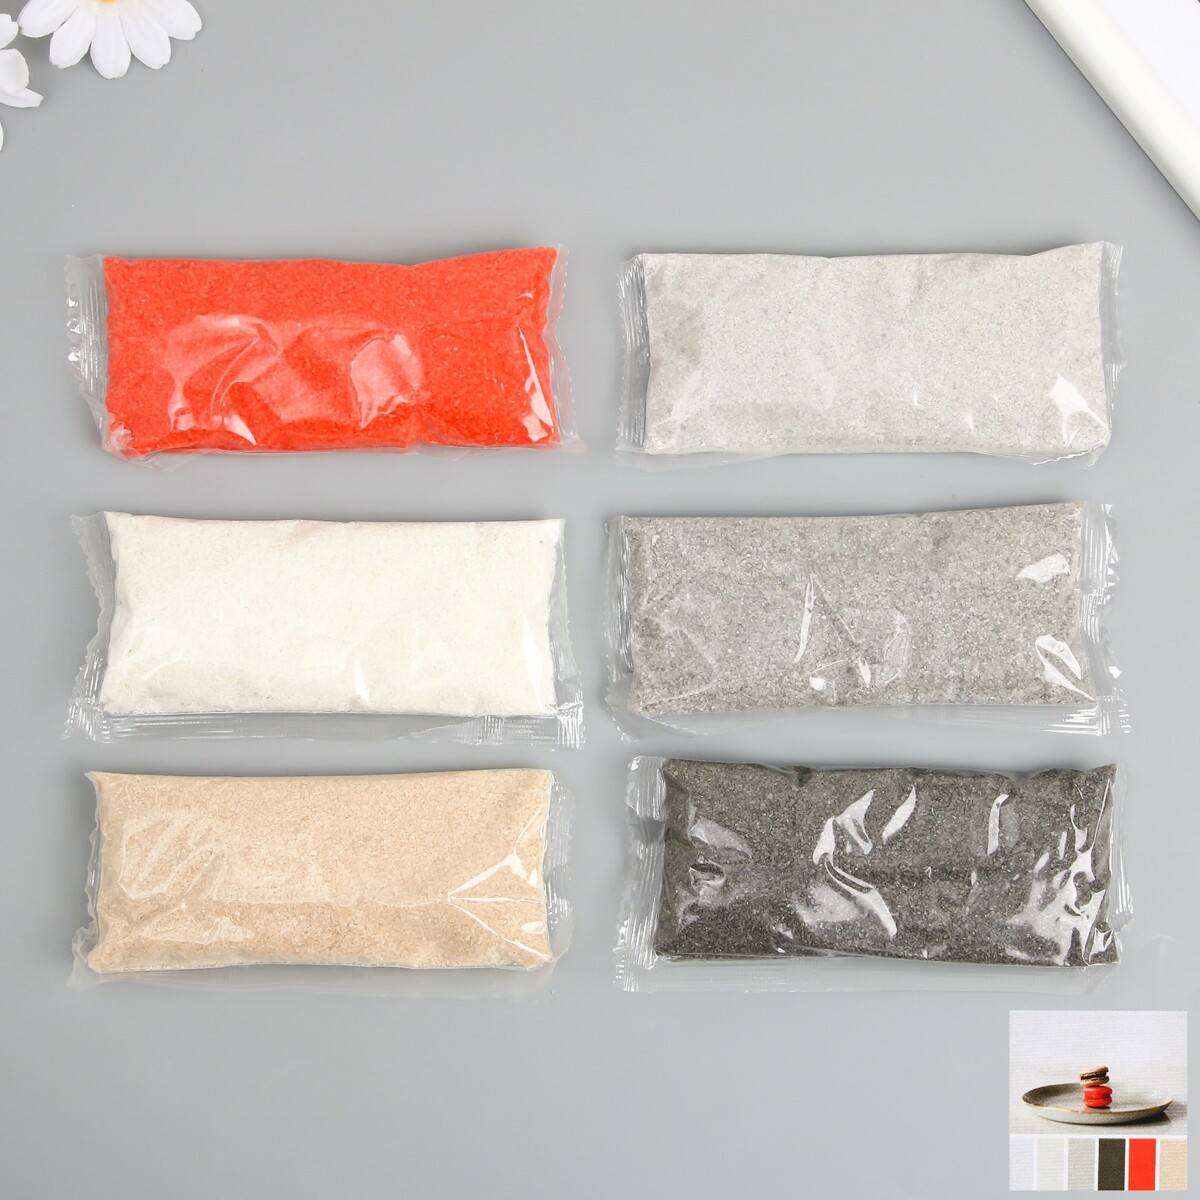 Набор цветного песка №4, 6 цветов, по 100 гр набор для творчества тм оригами пони аппликация из песка полет фантазии арт 06361